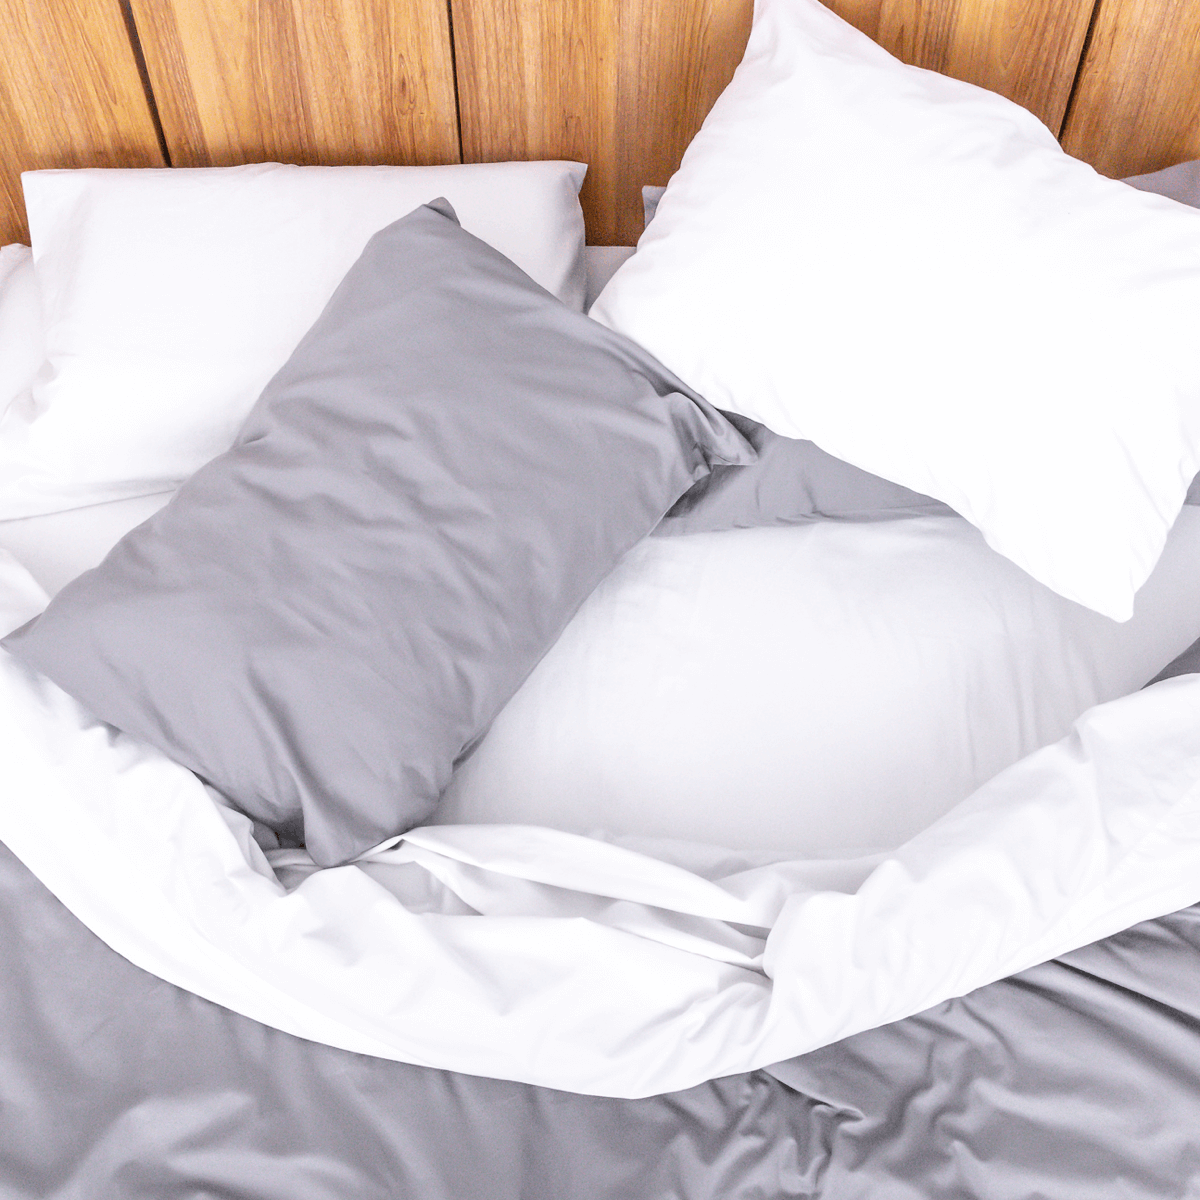 cama con juego completo de sabanas blancas y funda de duvet gris ceniza